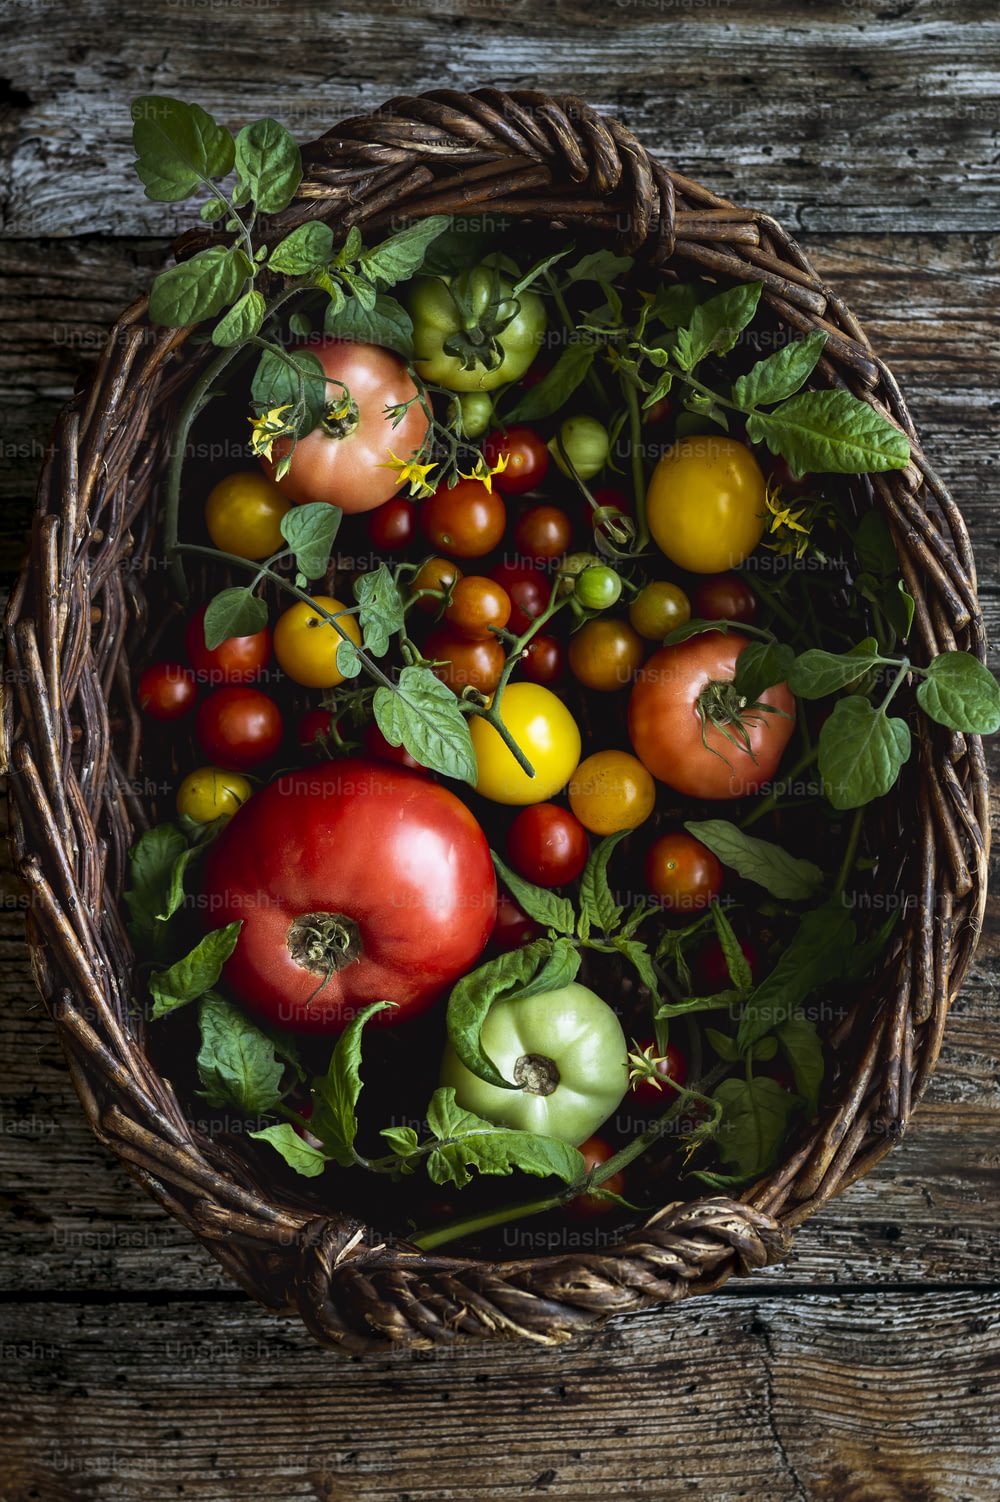 Ein Korb gefüllt mit vielen verschiedenen Tomatensorten